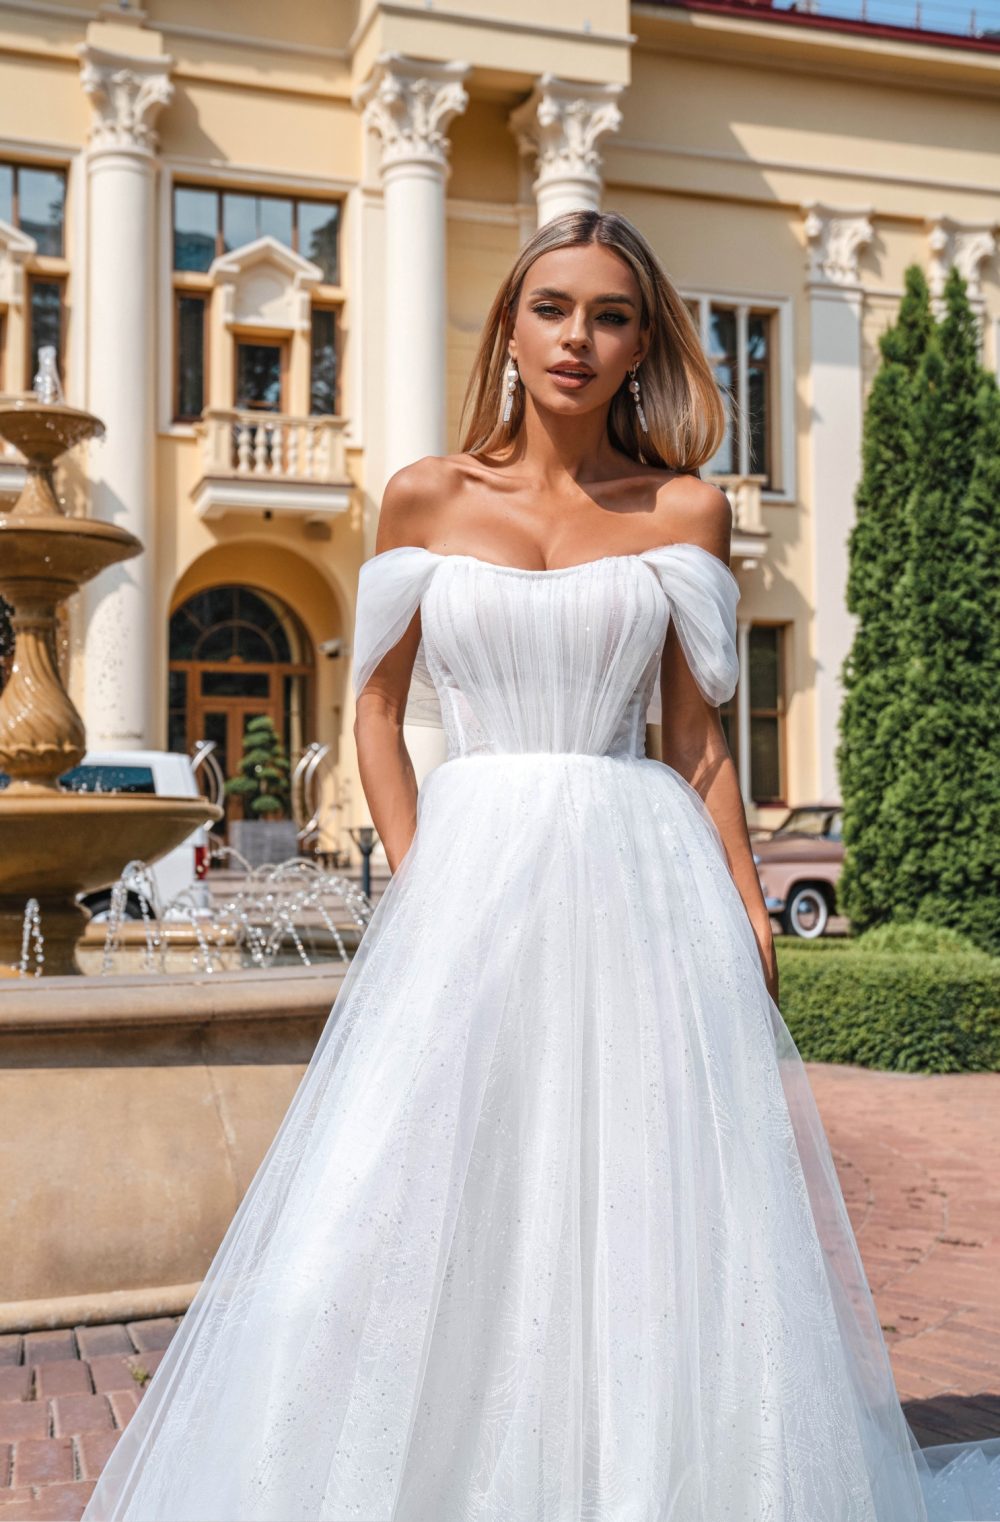 Свадебное платье Рената